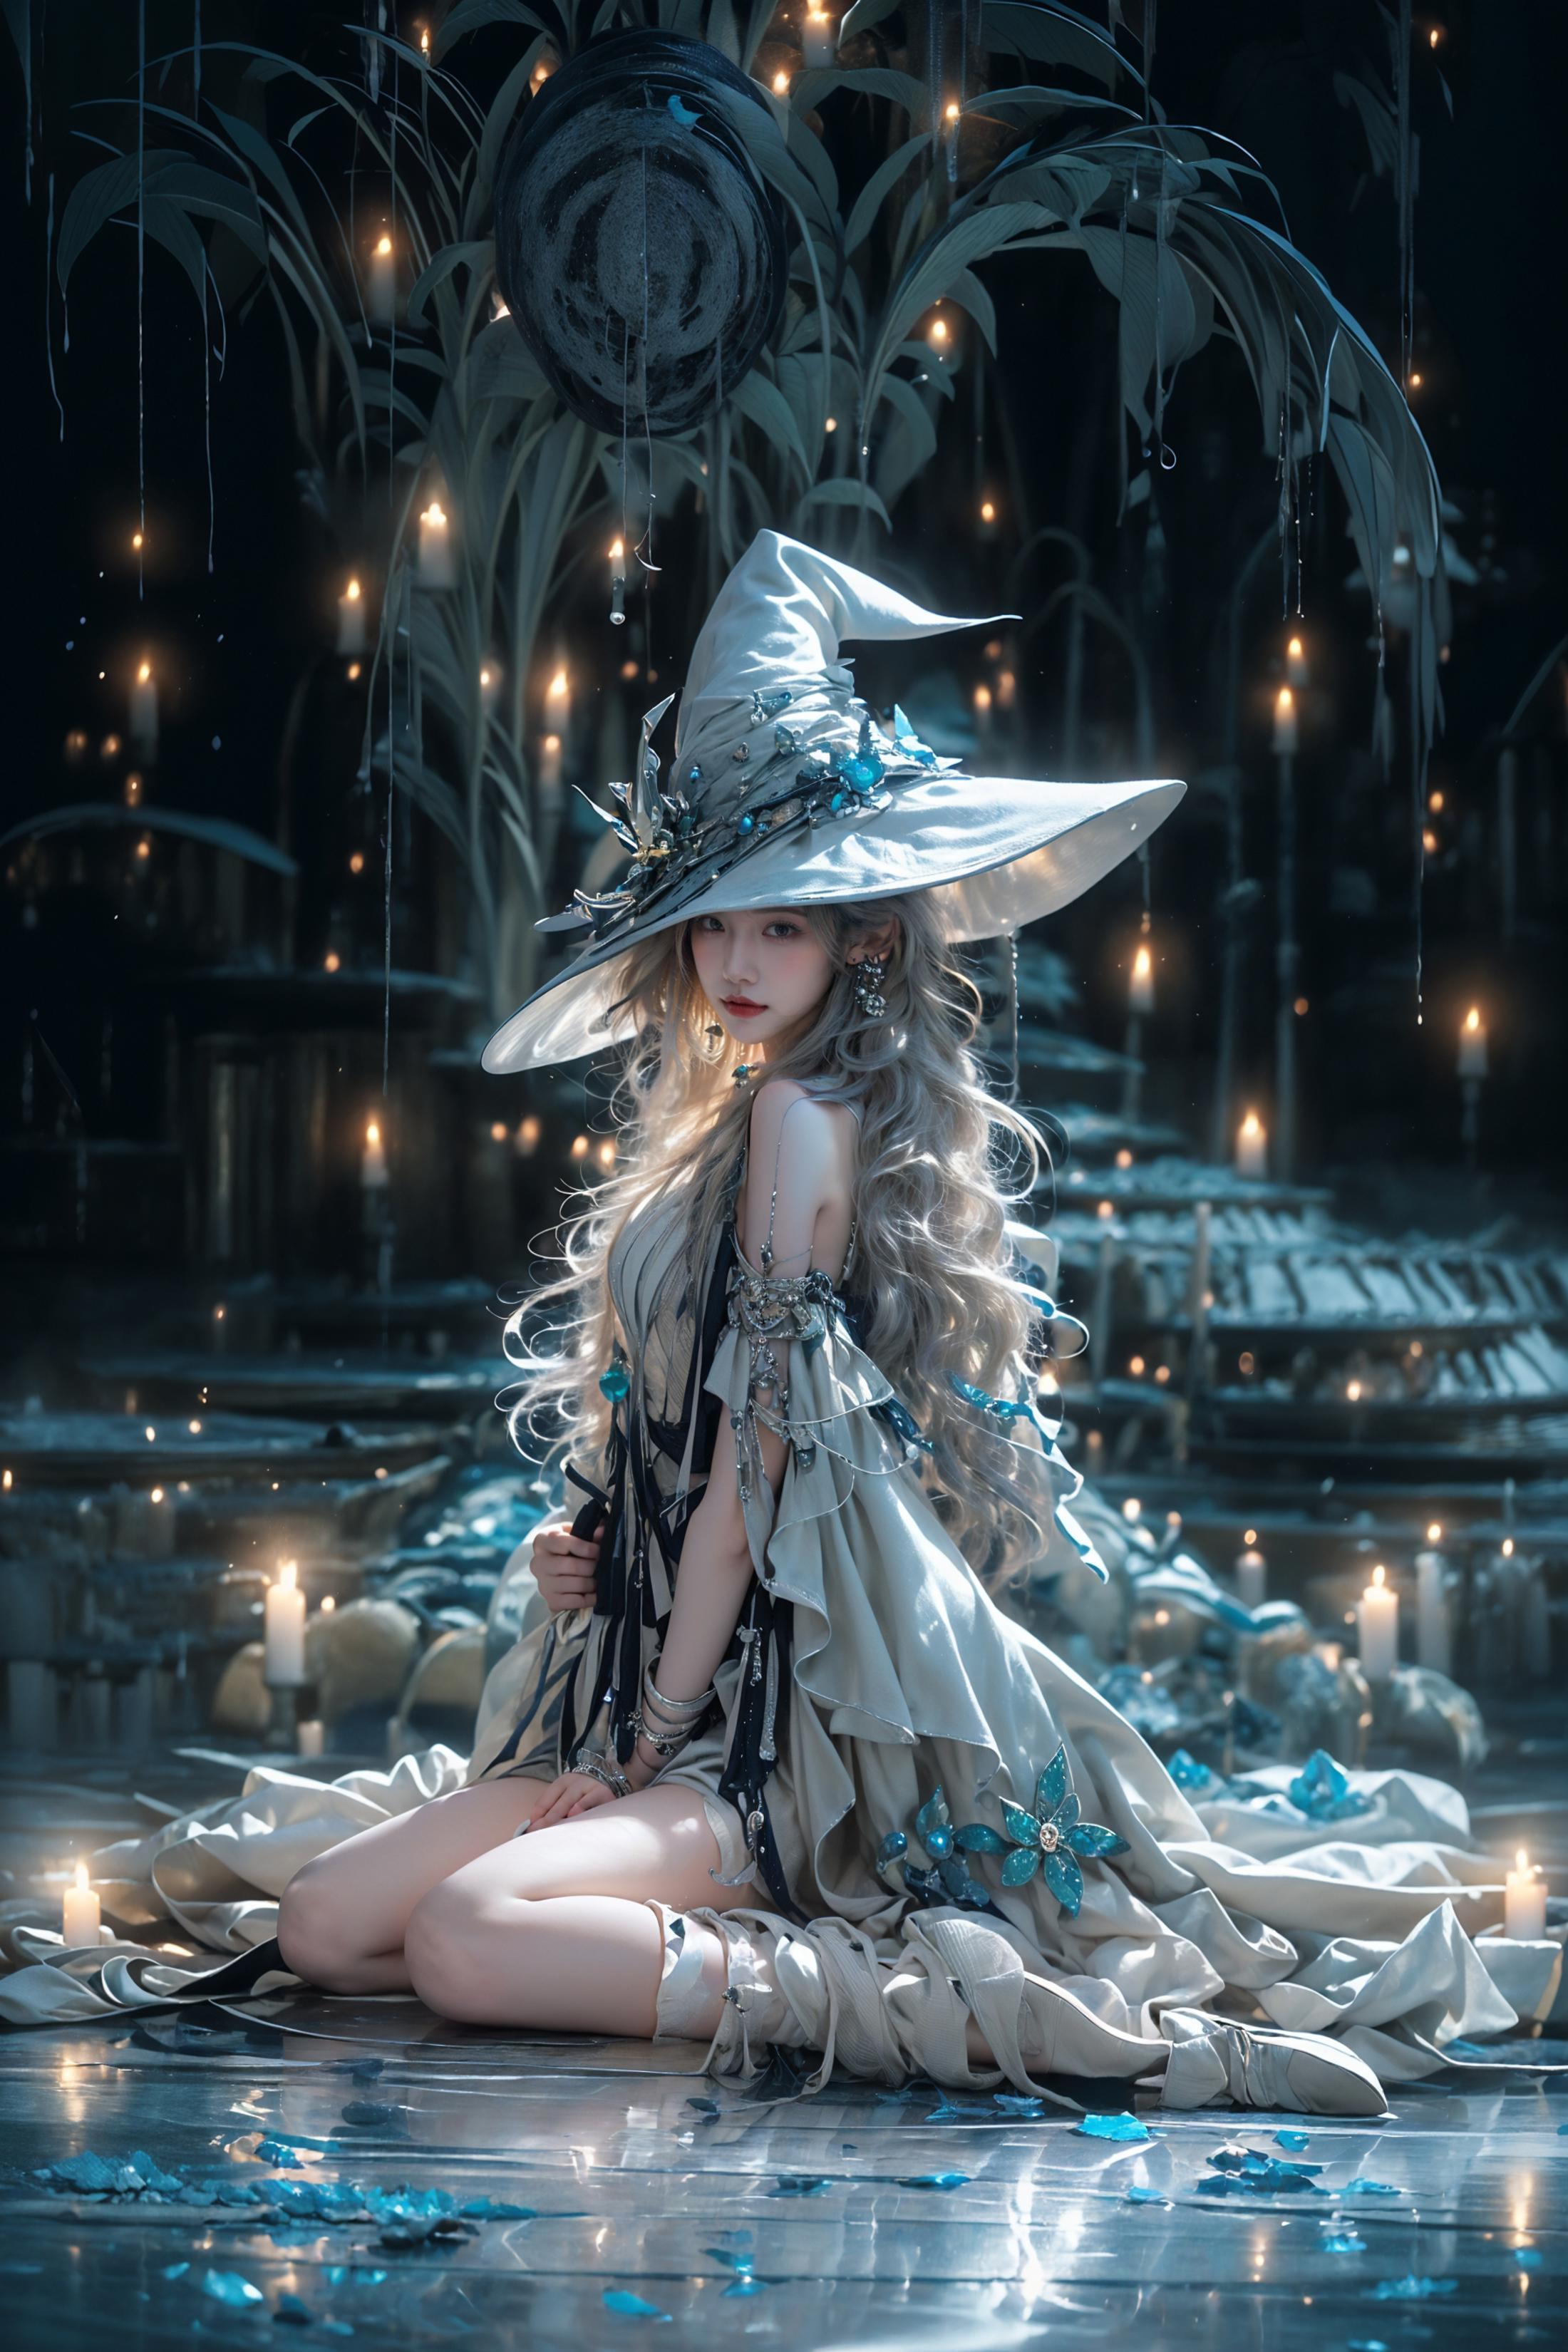 绪儿-月亮女巫 Moon witch image by XRYCJ